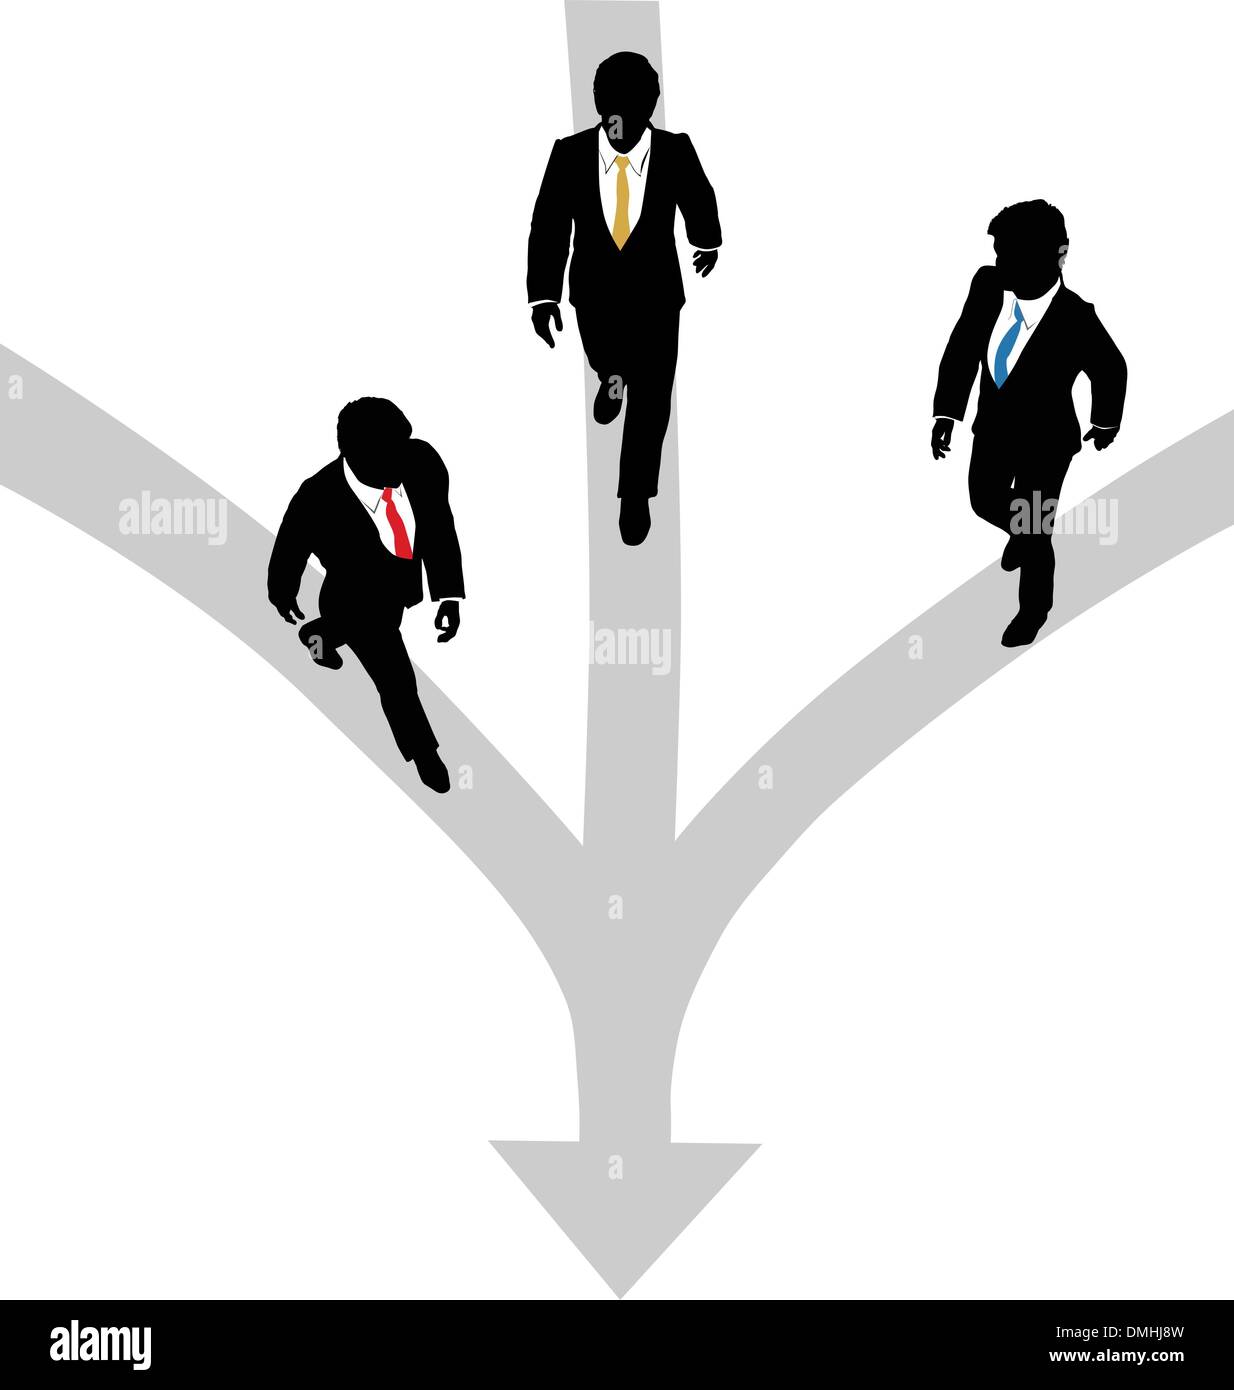 Geschäftsleute gehen 3 Wege gemeinsam in eine Richtung Stock Vektor